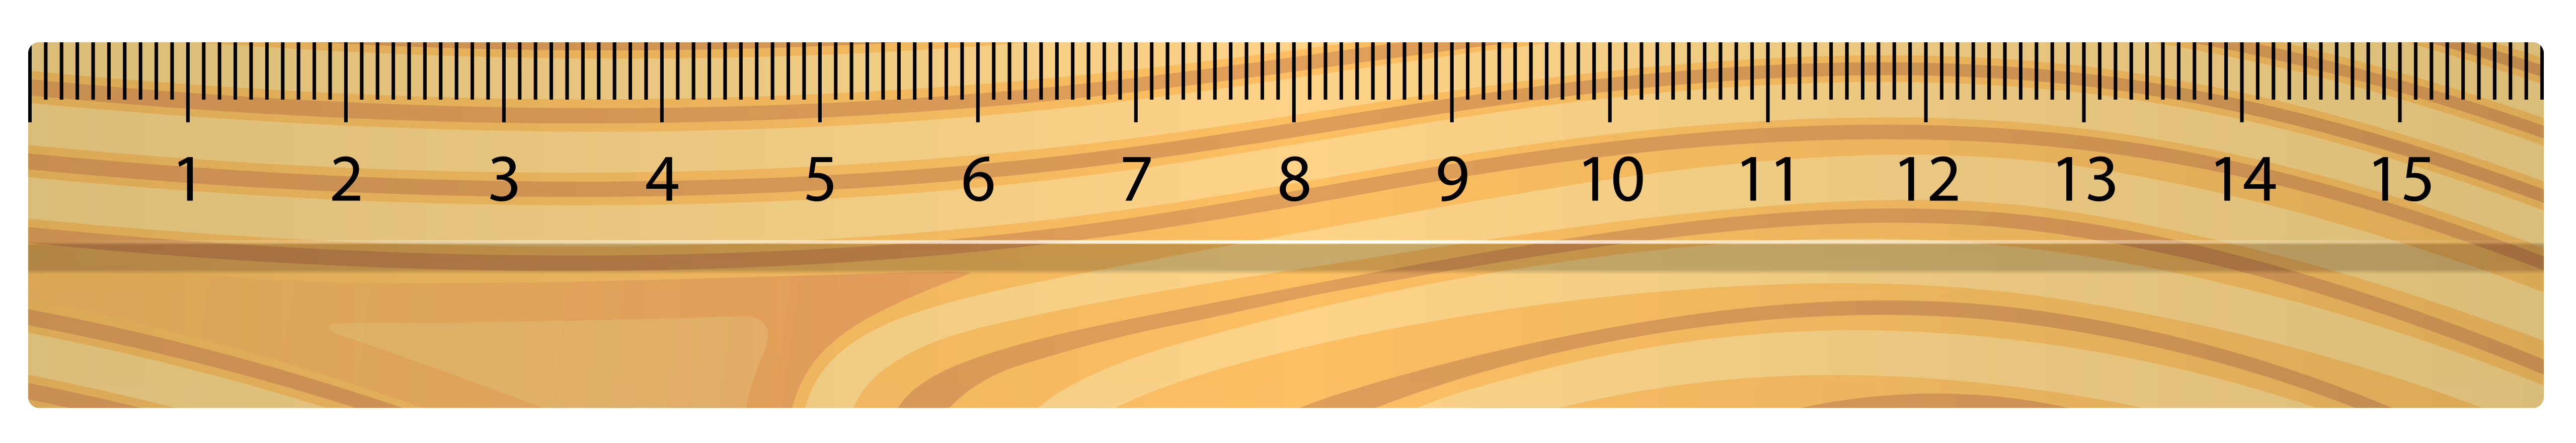 clipart ruler vintage